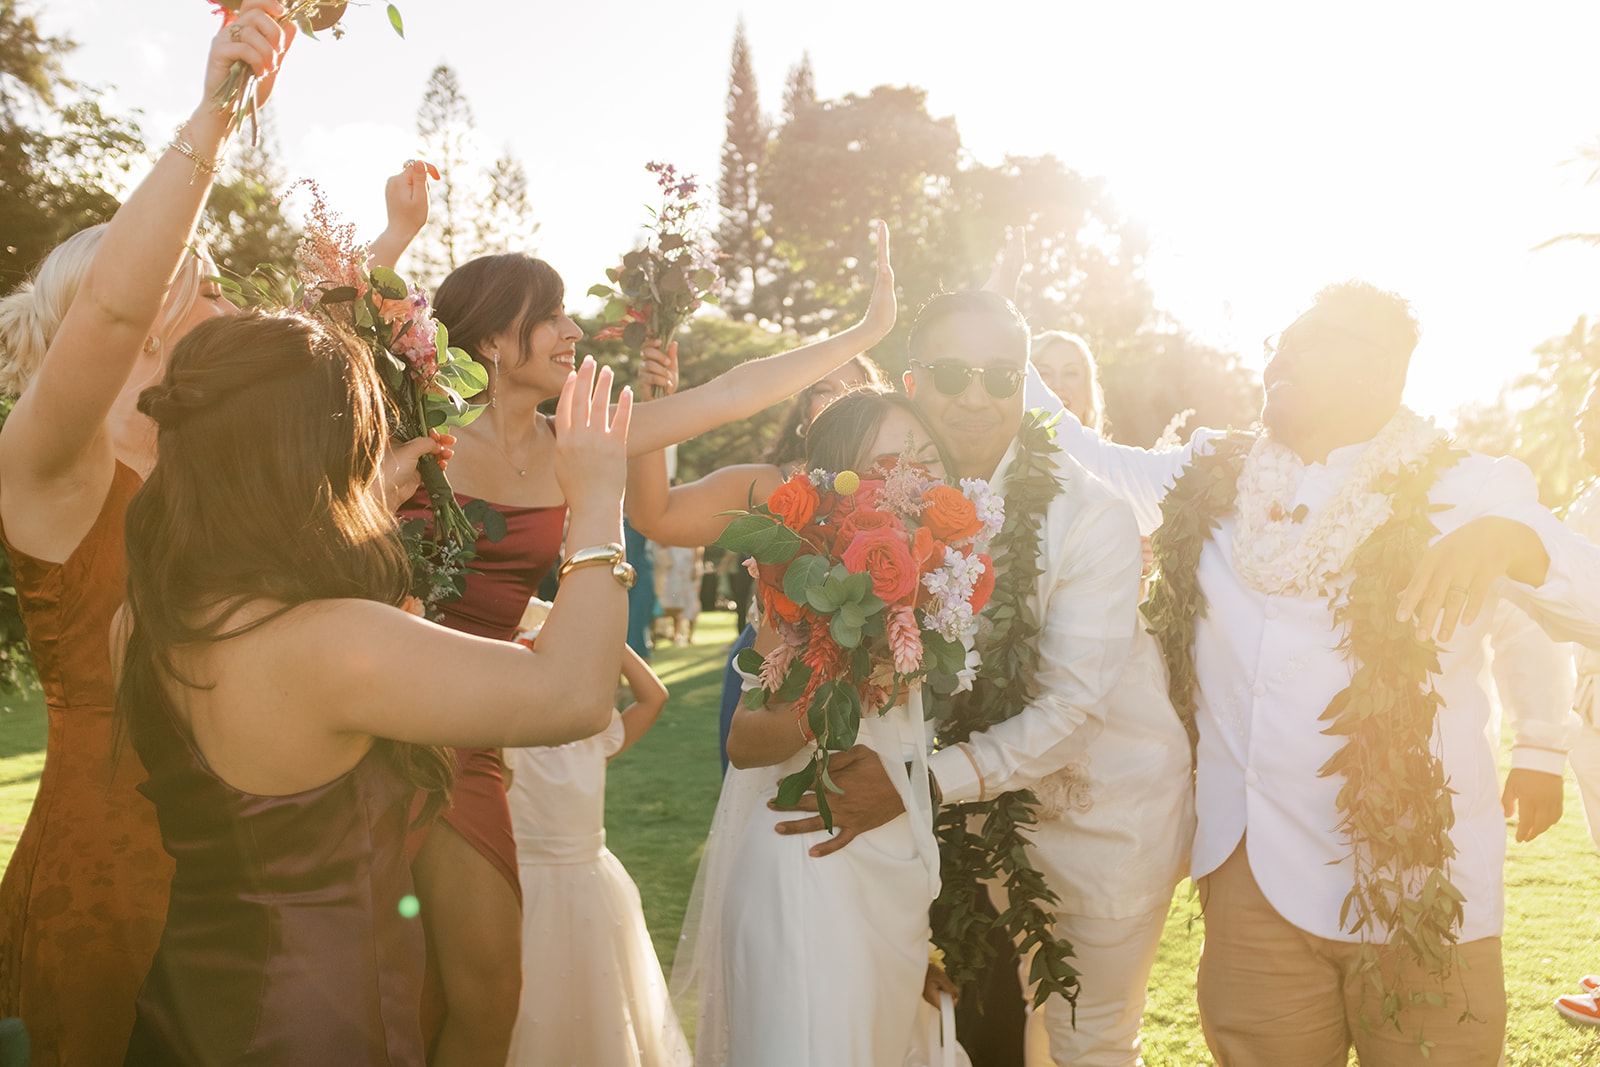 Wedding celebration with joyful guests throwing flower petals on the newlywed couple Hawaiian Wedding in Kauai